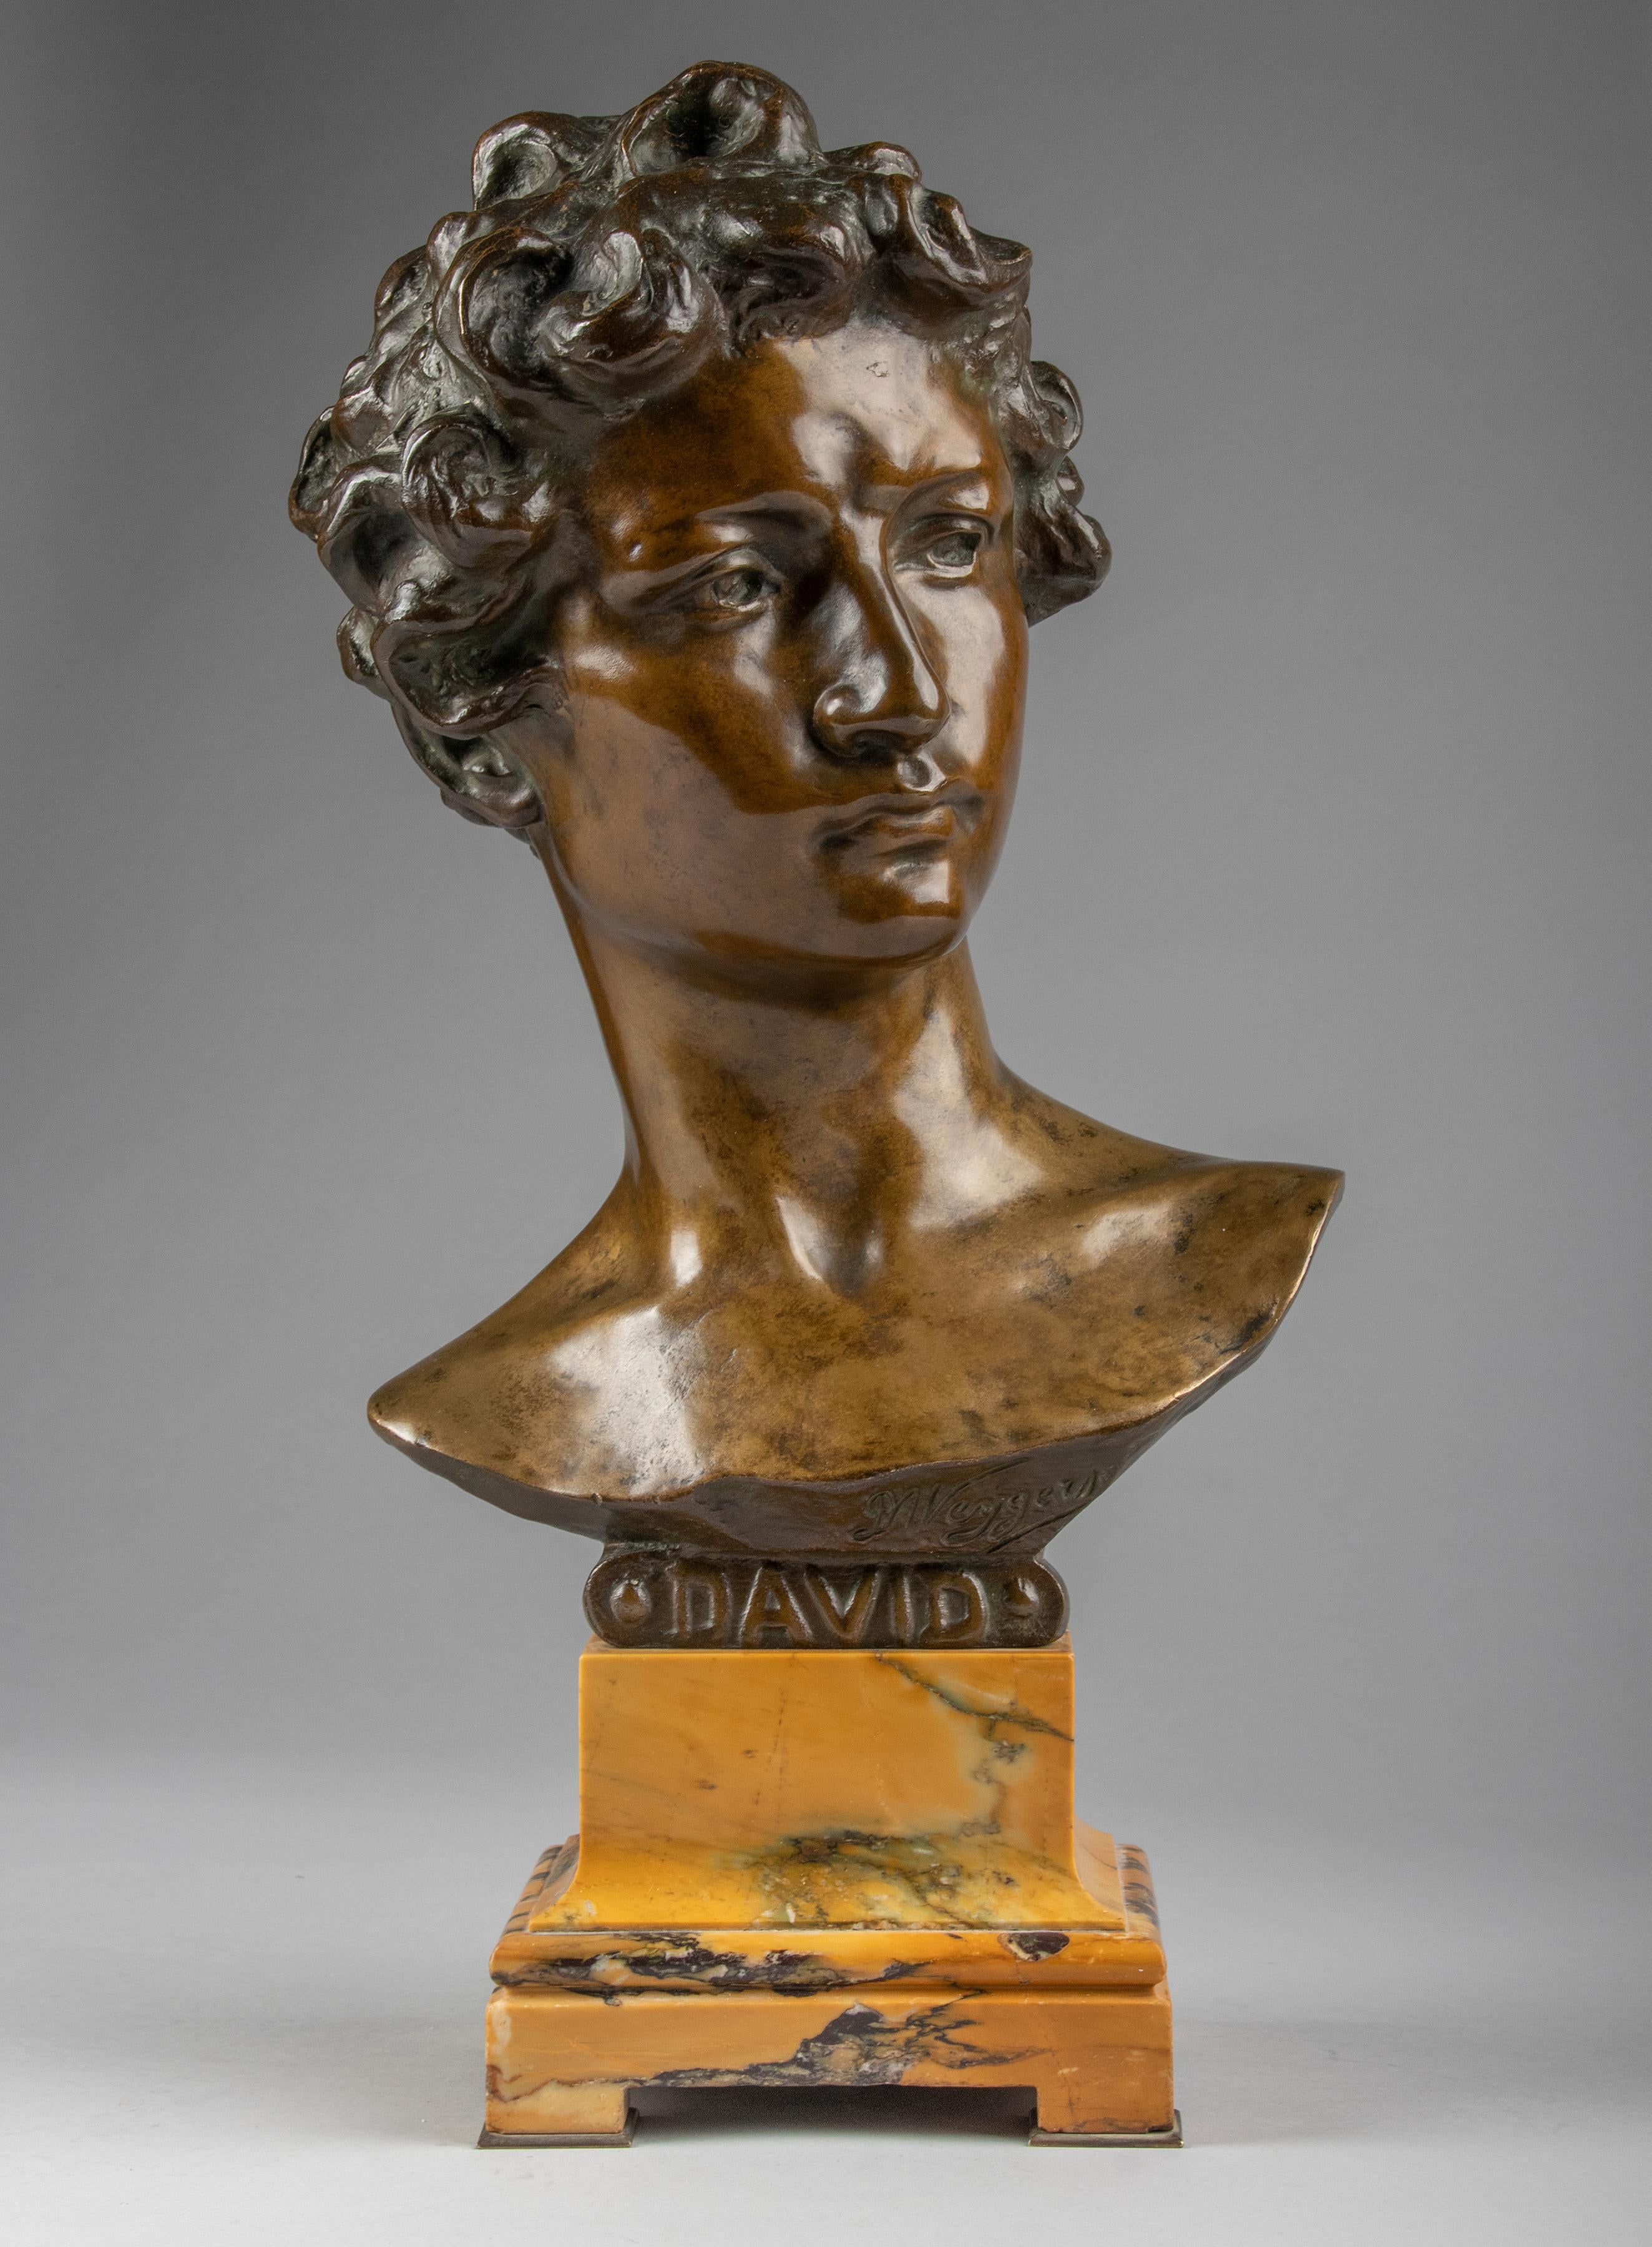 Un buste antique en bronze patiné brun représentant le mythique David d'après le chef-d'œuvre de Michel-Ange exposé au musée de Florence. Le buste en bronze patiné brun foncé présente un visage délicatement modelé. Le buste est monté sur un socle en